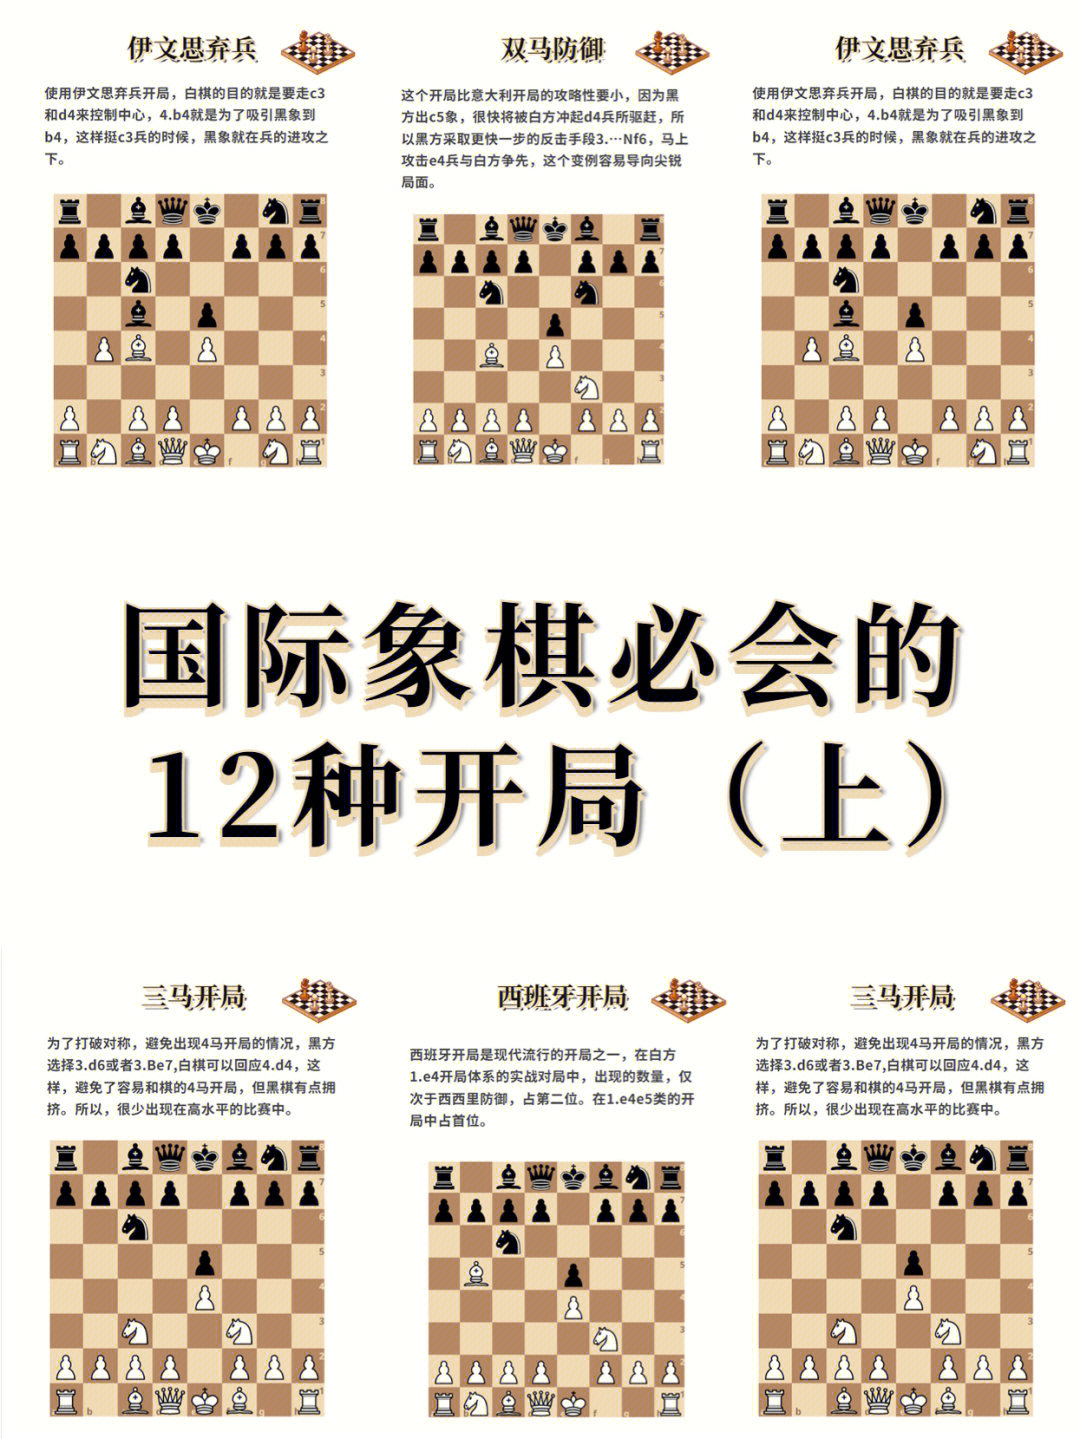 国际象棋经典棋局图片